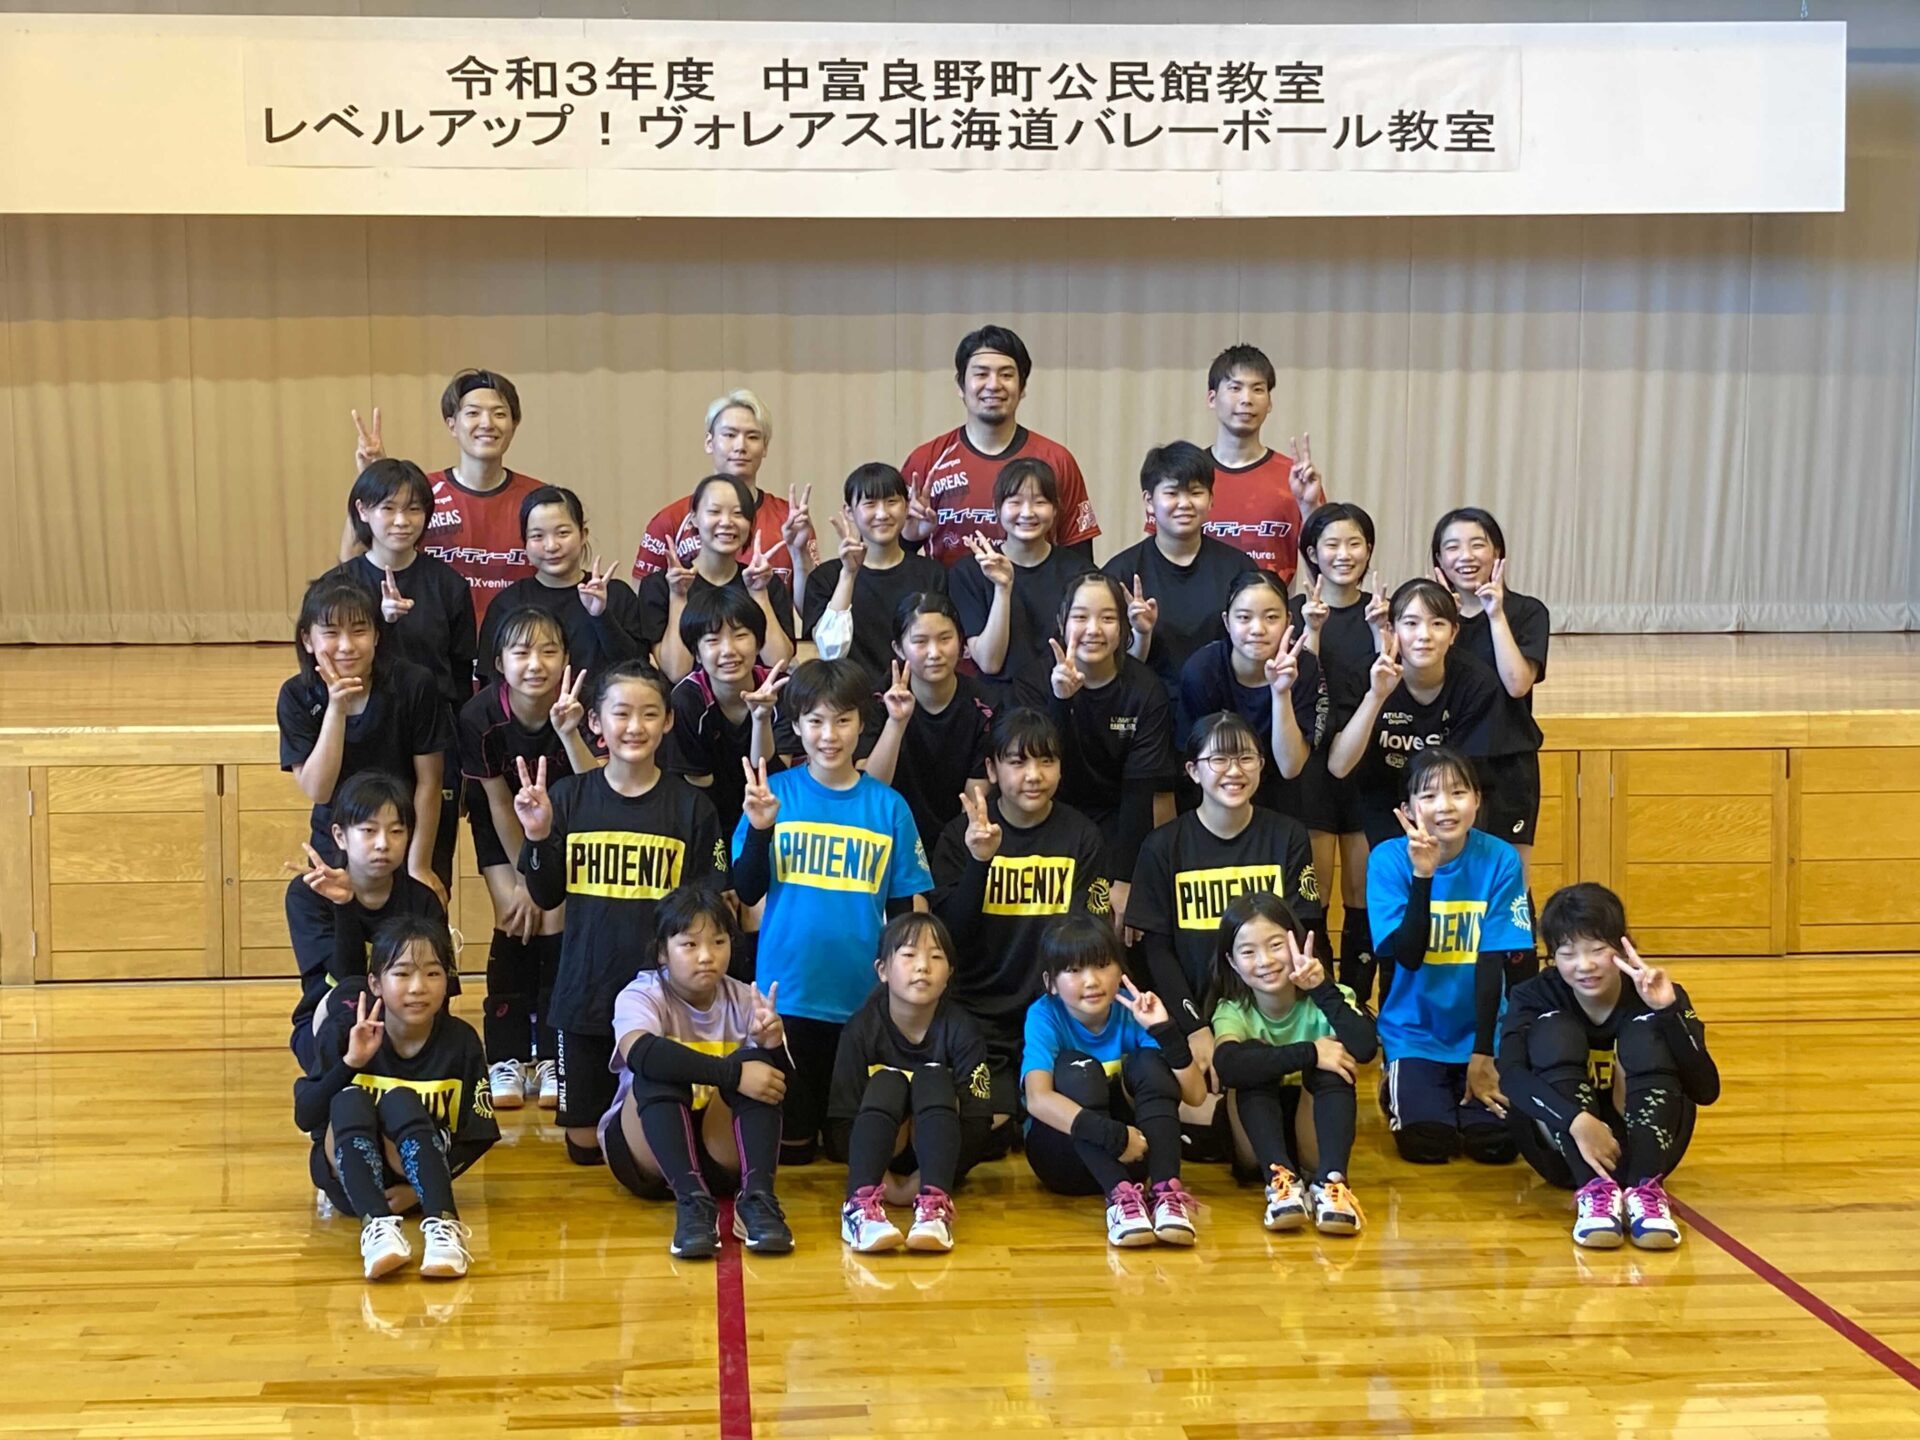 中富良野町で小中学生向けにバレーボール教室を行いました